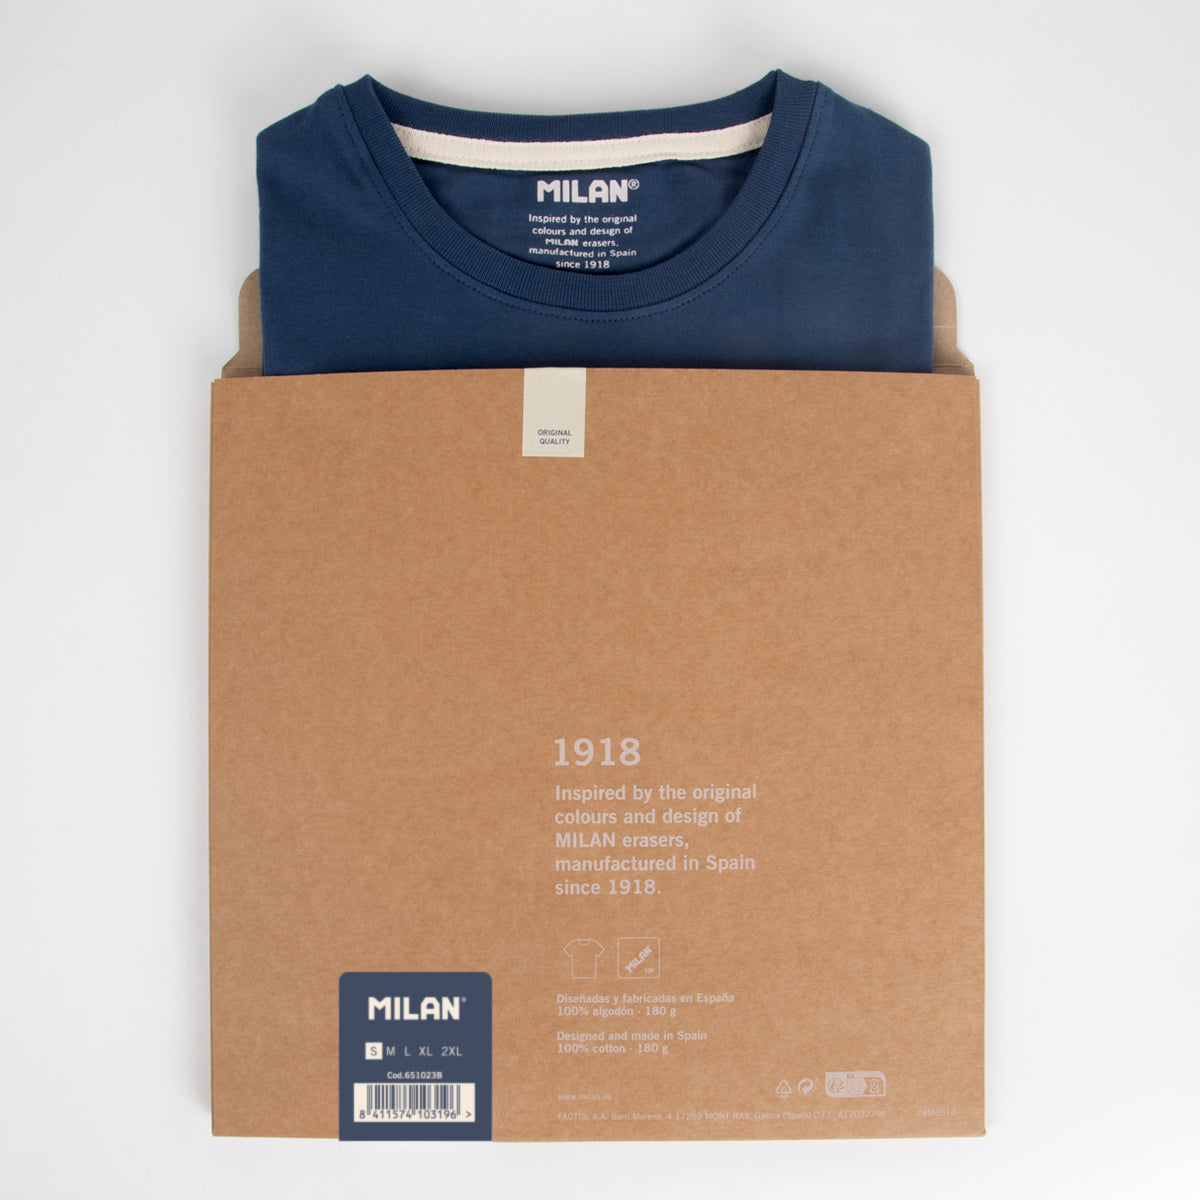 Camiseta hombre Slim Fit 430 since 1918, inspirada en las gomas de borrar MILAN